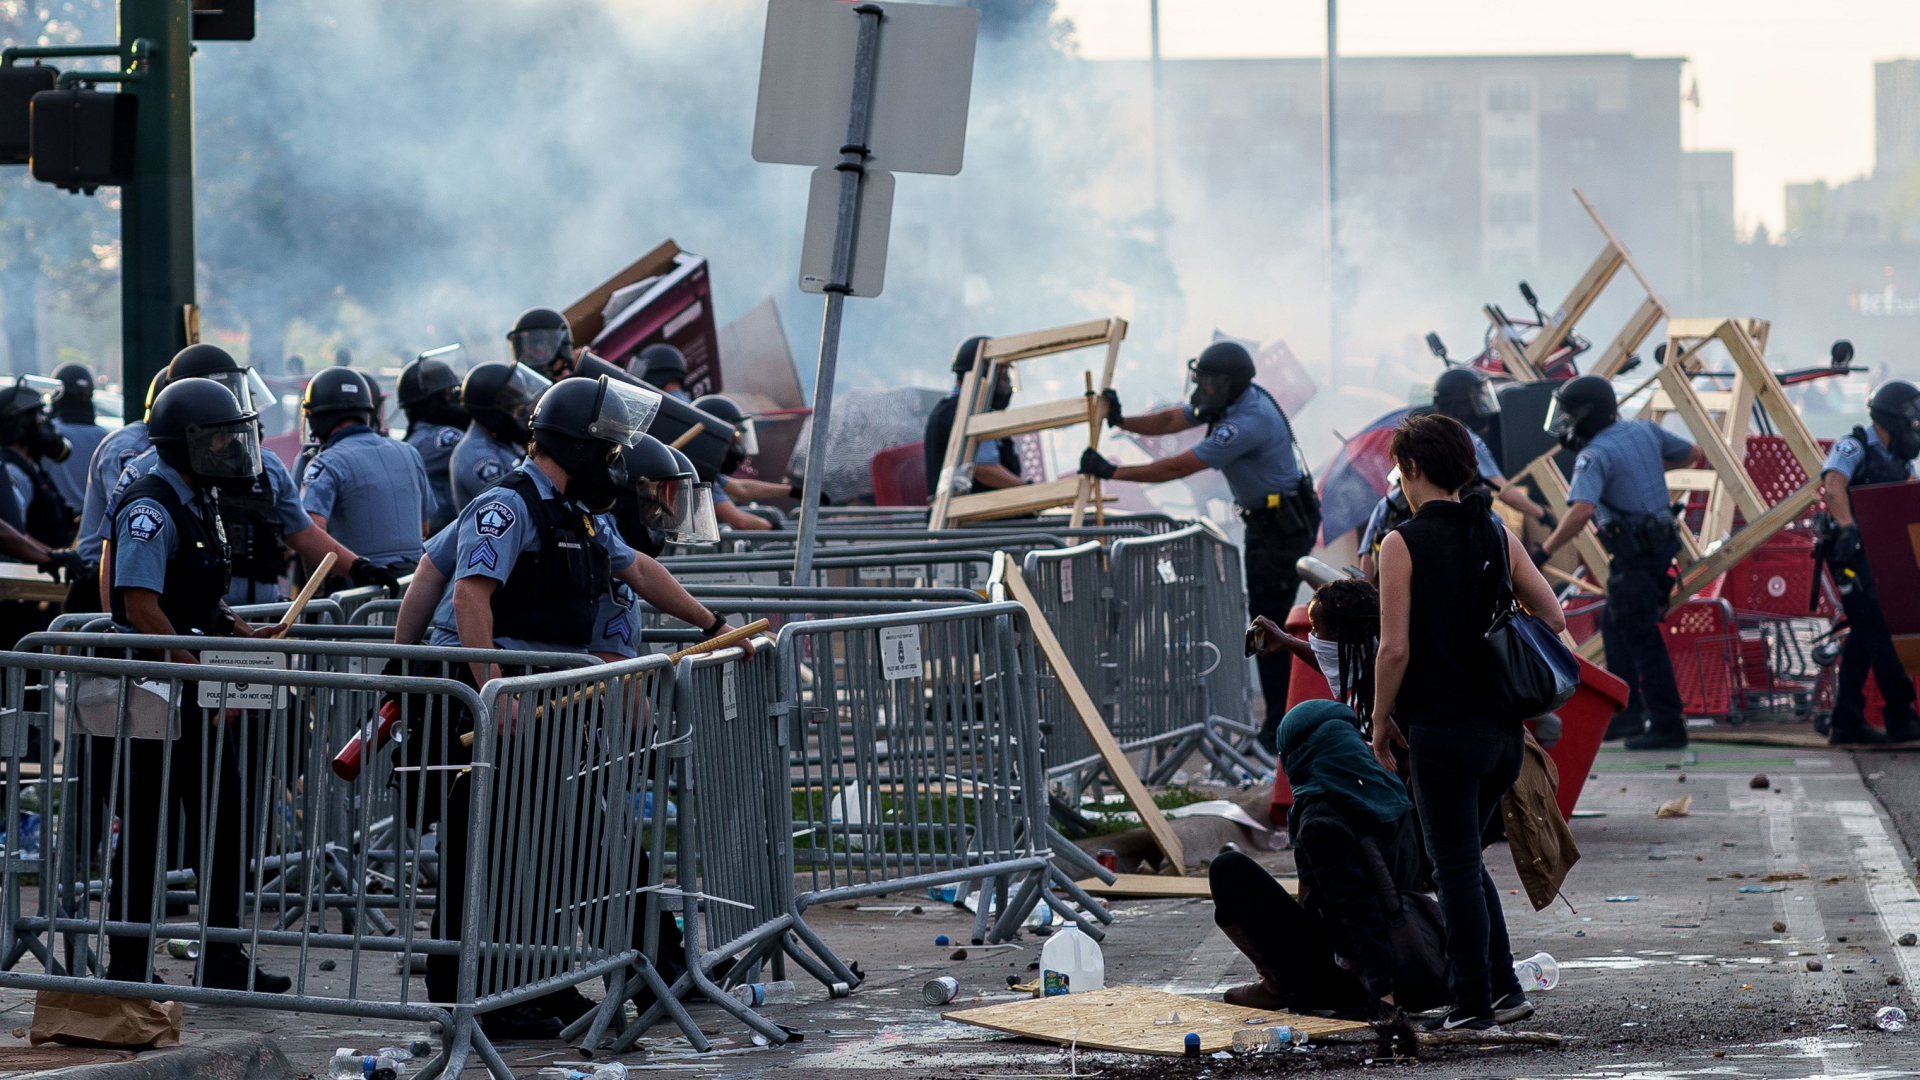 Polizisten räumen Barrikaden, die Demonstranten aufgebaut haben. | AFP